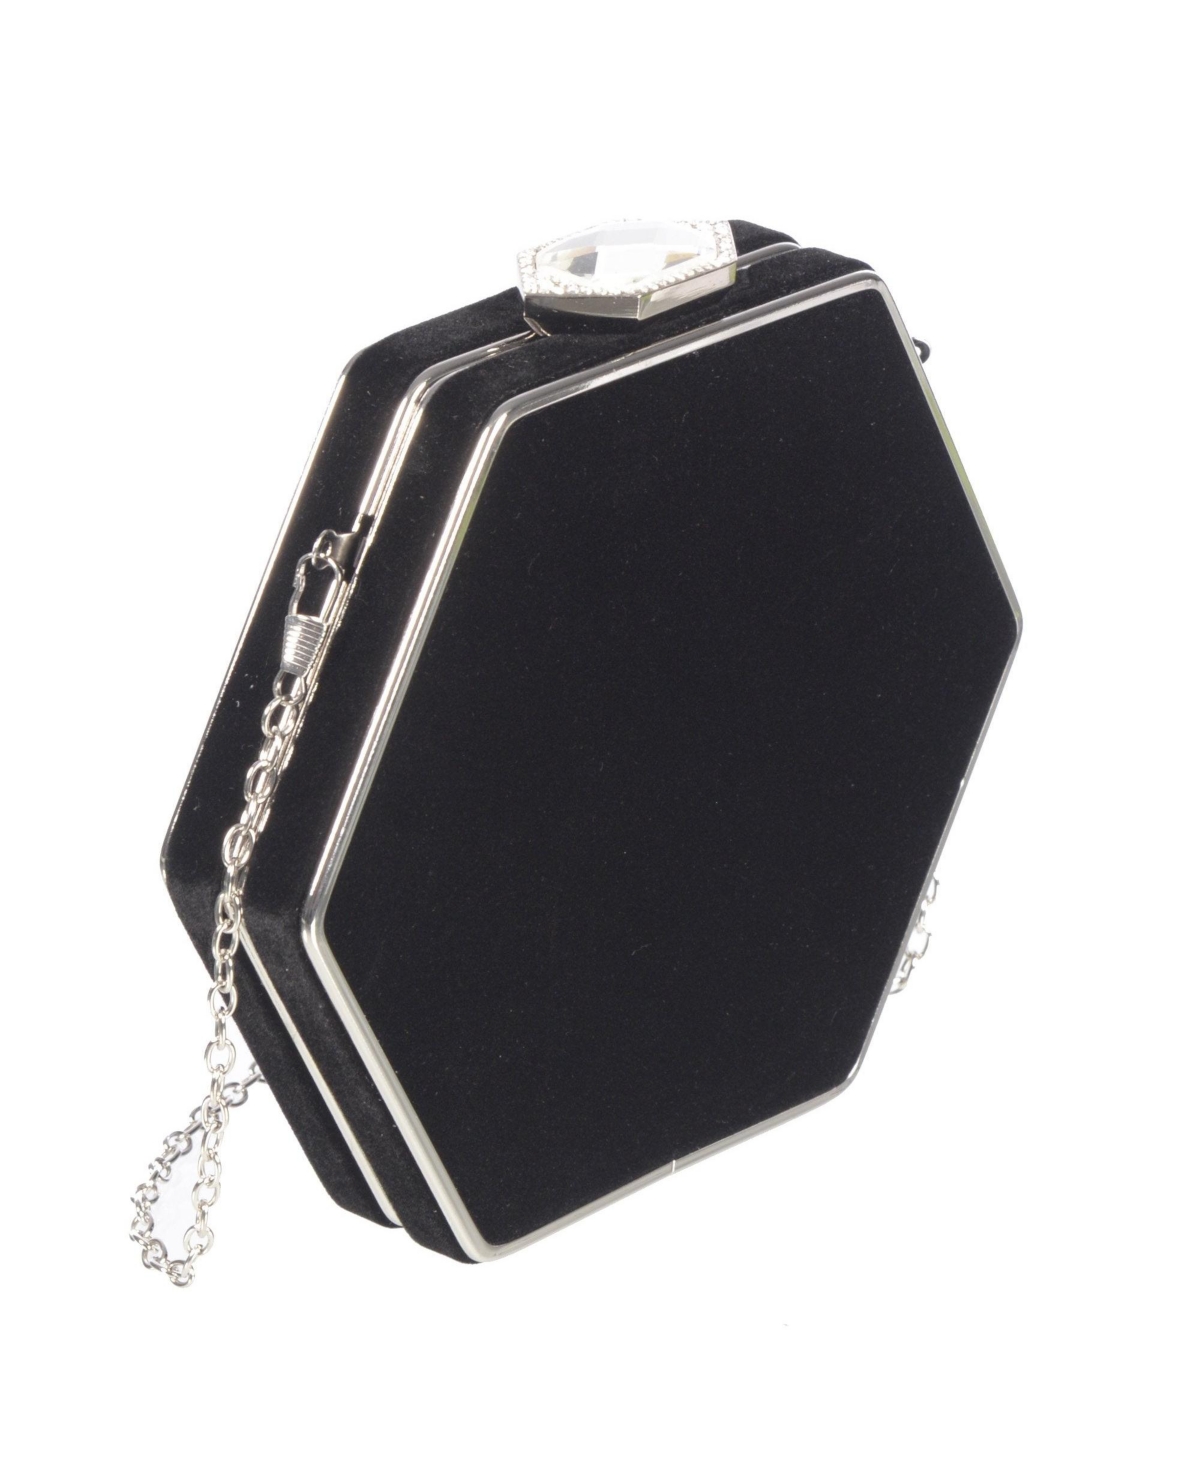 Ladies Velvet Evening Bag with Jewel Closure - Black